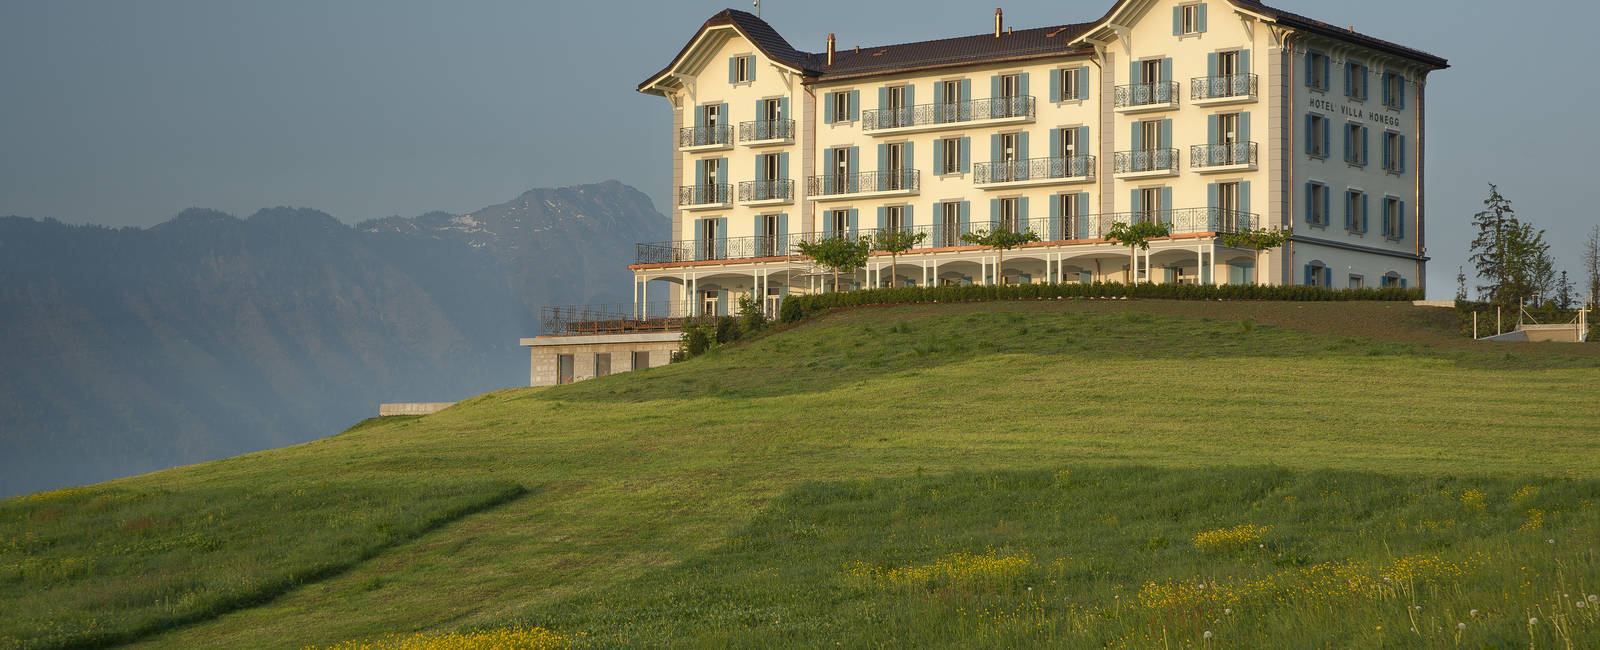  Hotel des Monats 

Die besten Luxushotels der Schweiz